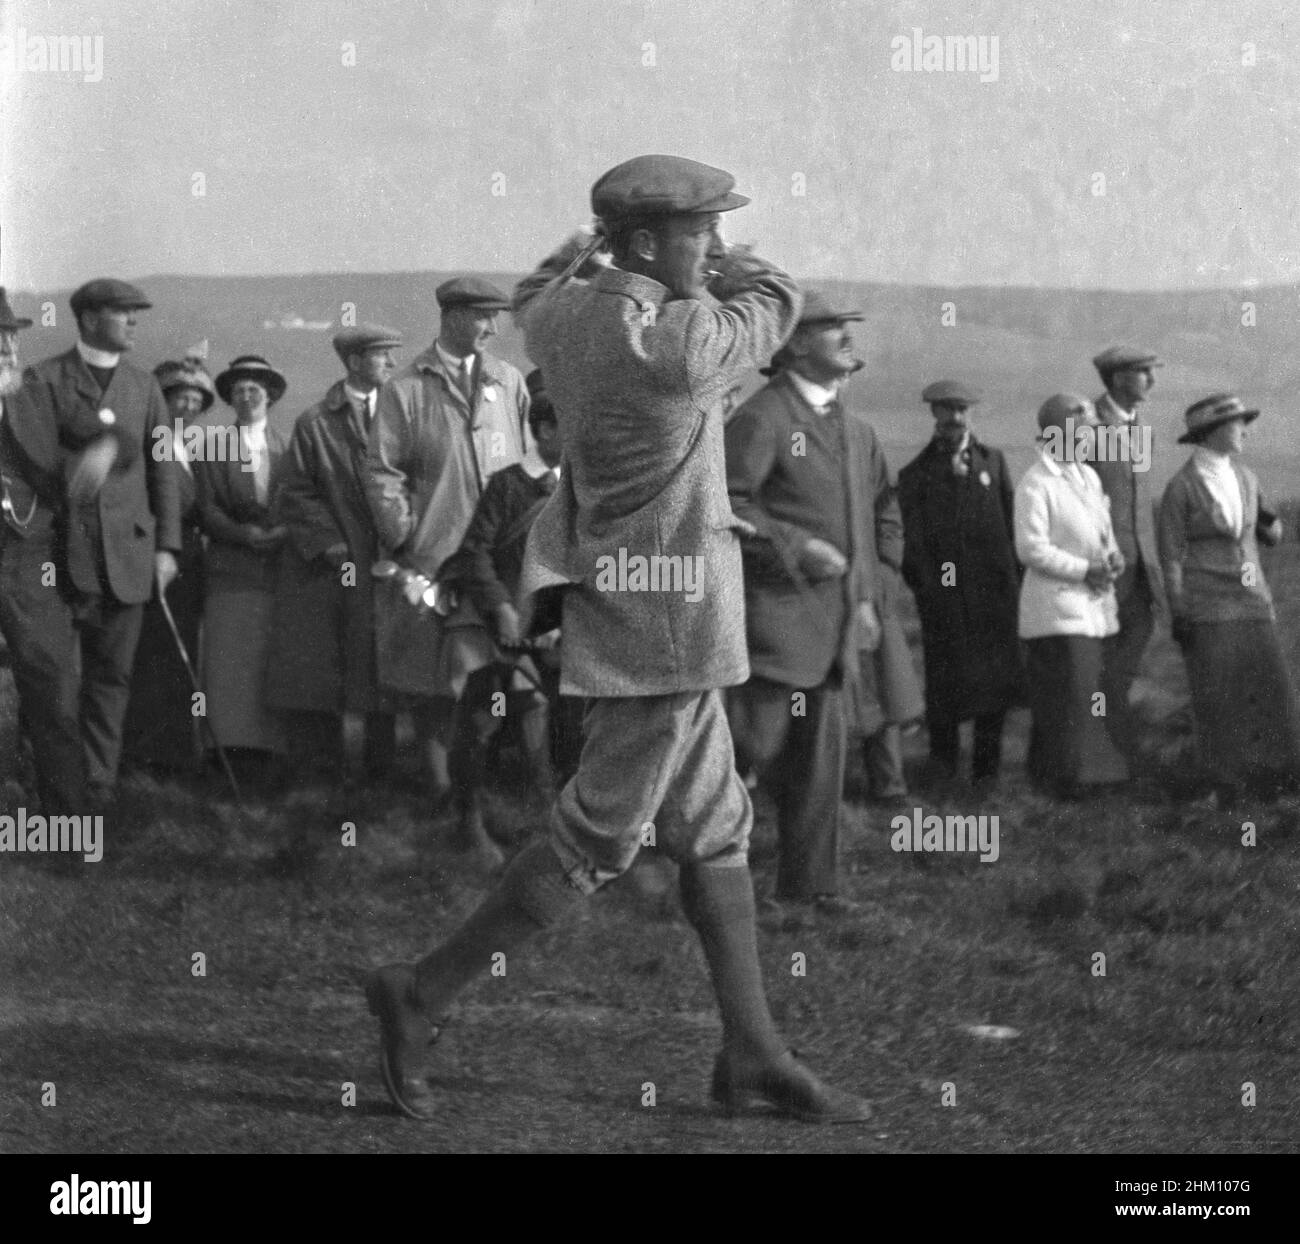 Circa 1910, storico, un professionista di golf maschio - possibilmente Harry Vardon - in una giacca, più-twos e un cappuccio di stoffa e sigaretta in bocca che hiting un colpo, guardato da un piccolo gruppo di spettatori nei vestiti formali del tempo. Il suo compagno di gioco, J H. Taylor, co-fondatore della PGA britannica nel 1901 e cinque volte vincitore del British Open Championship fu un pioniere del golf dell'epoca. Foto Stock